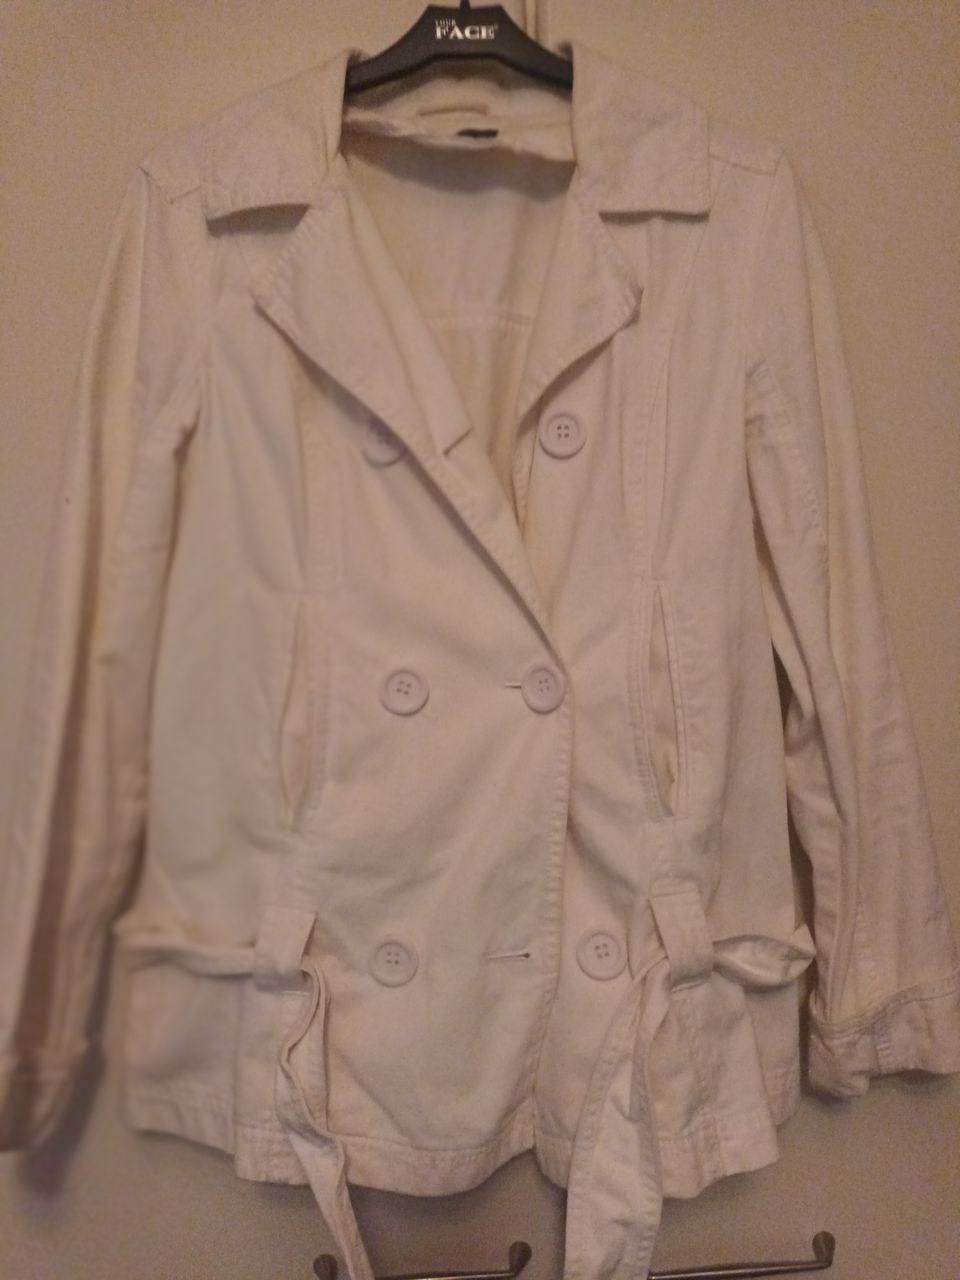 Valkoinen takki, koko M